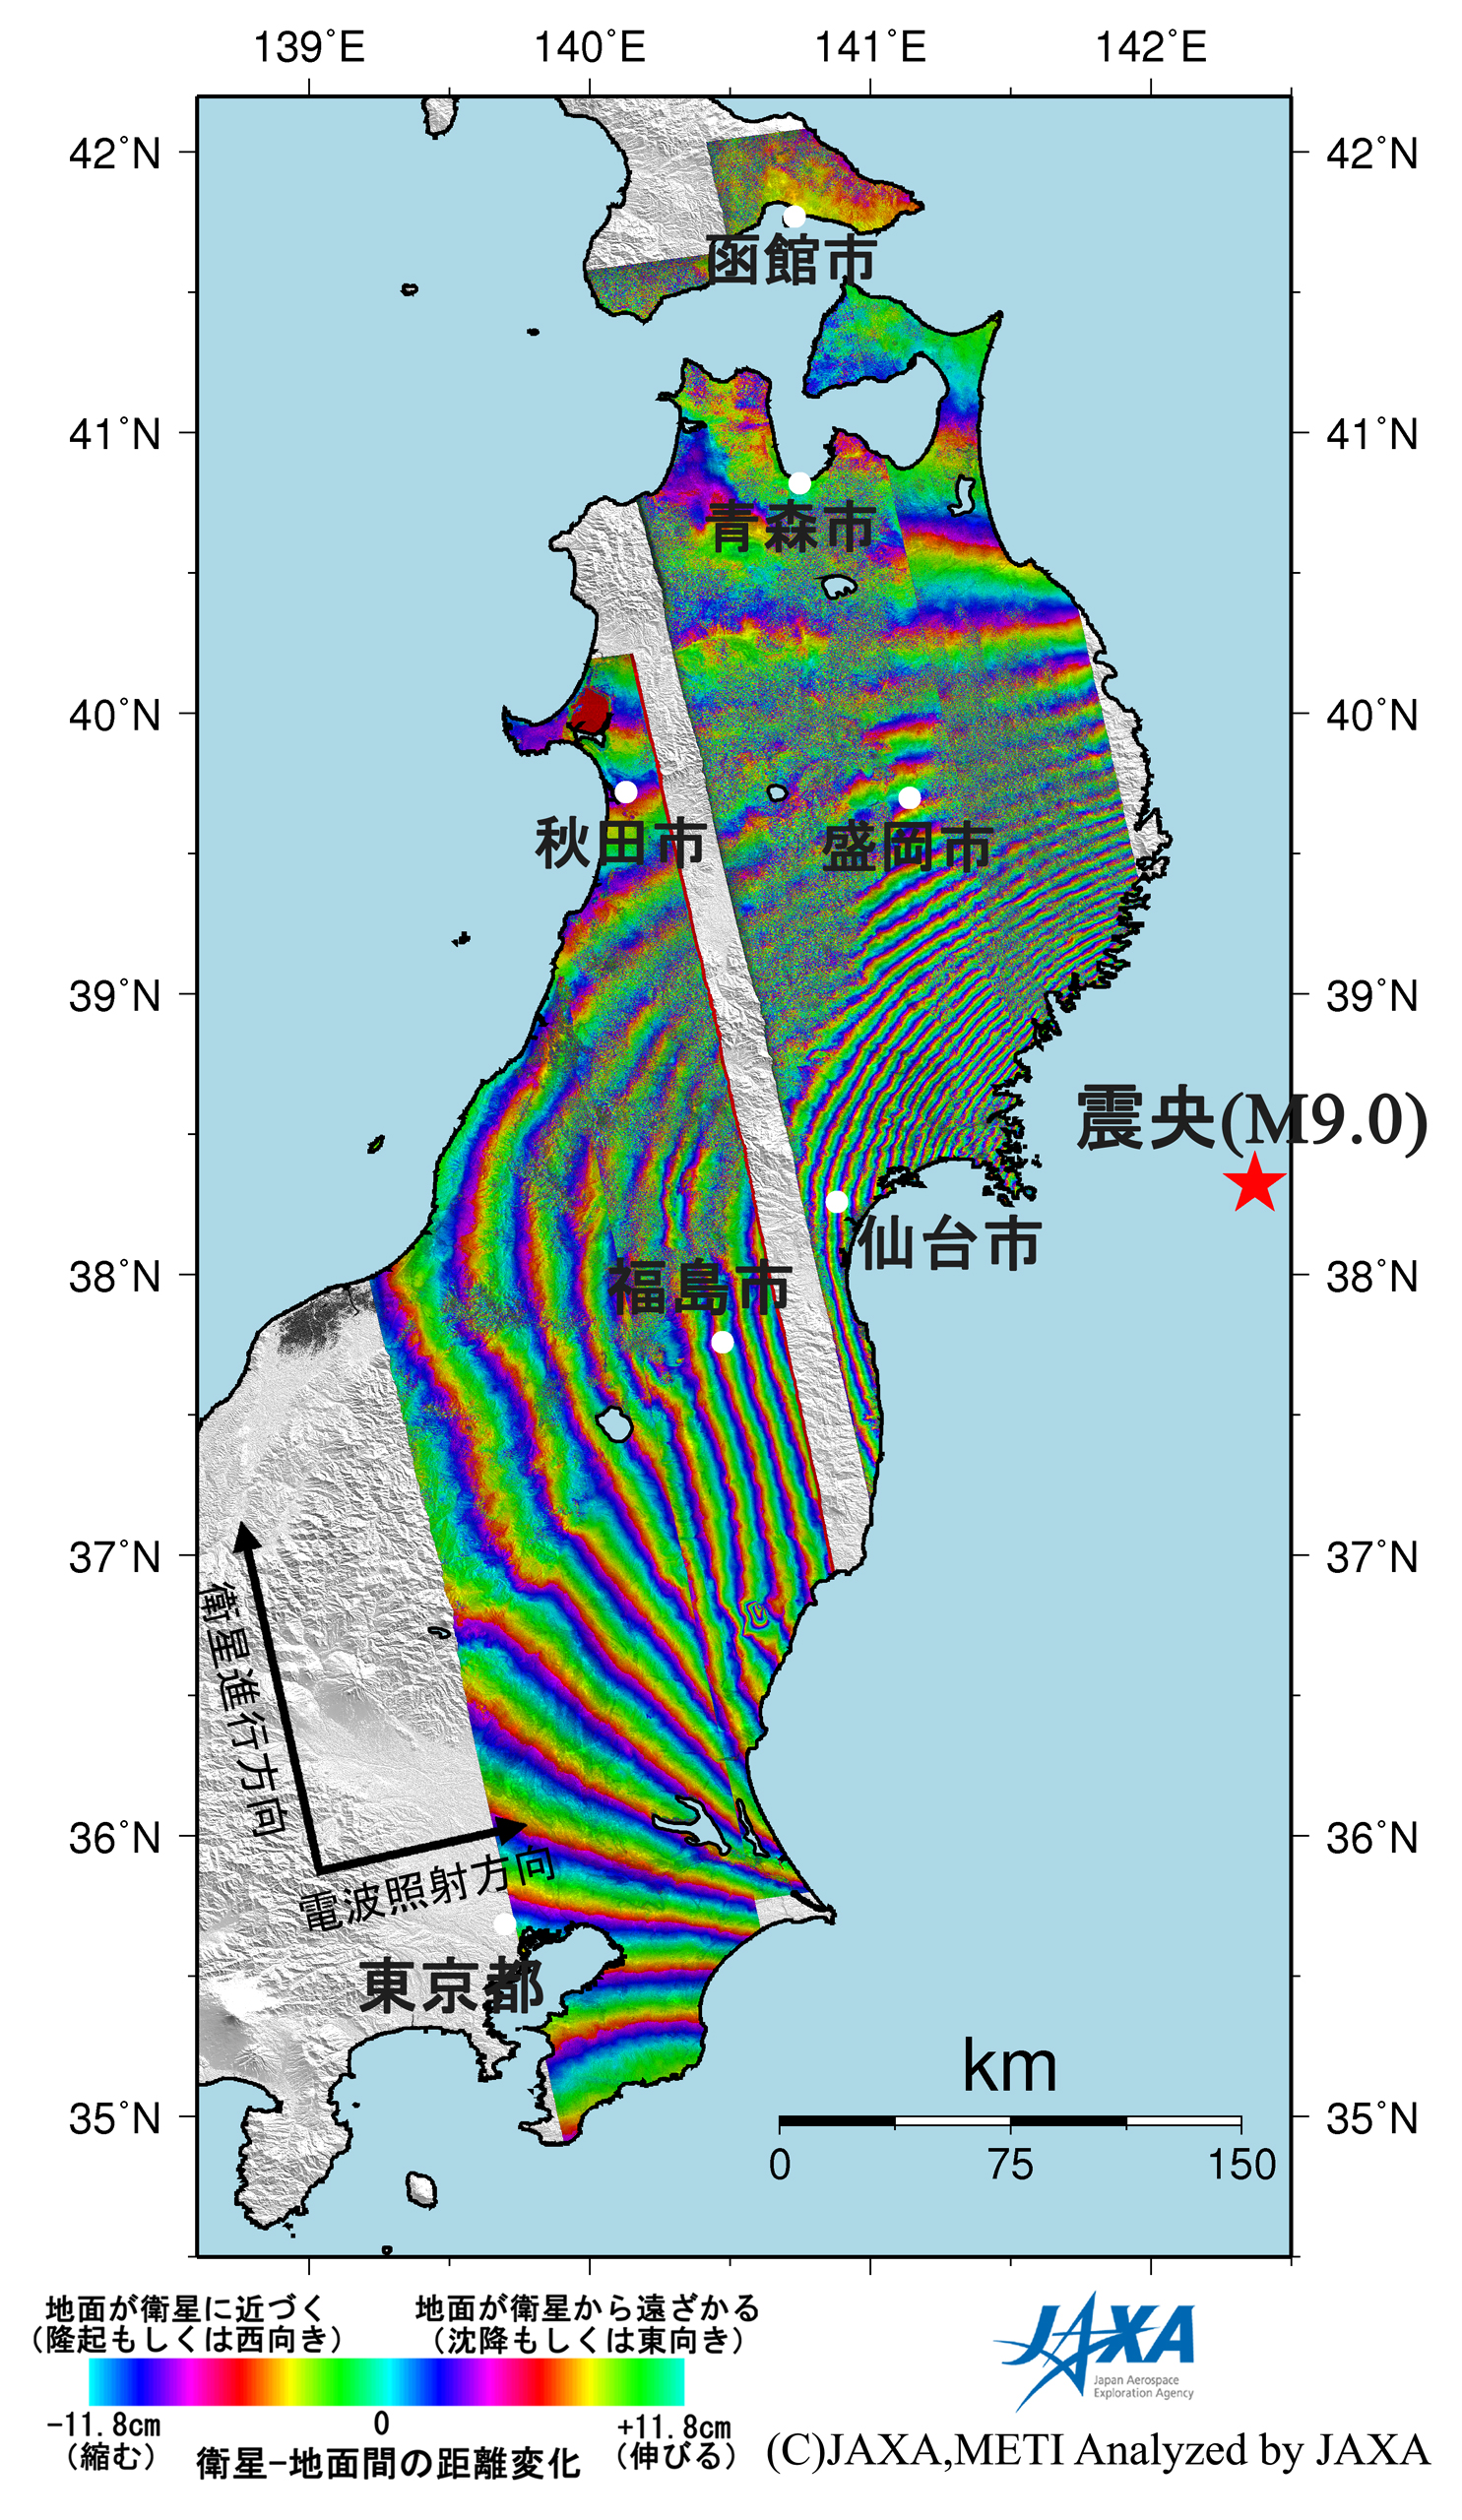 図3: これまでに実施した地殻変動観測の結果(昇交軌道のみ)